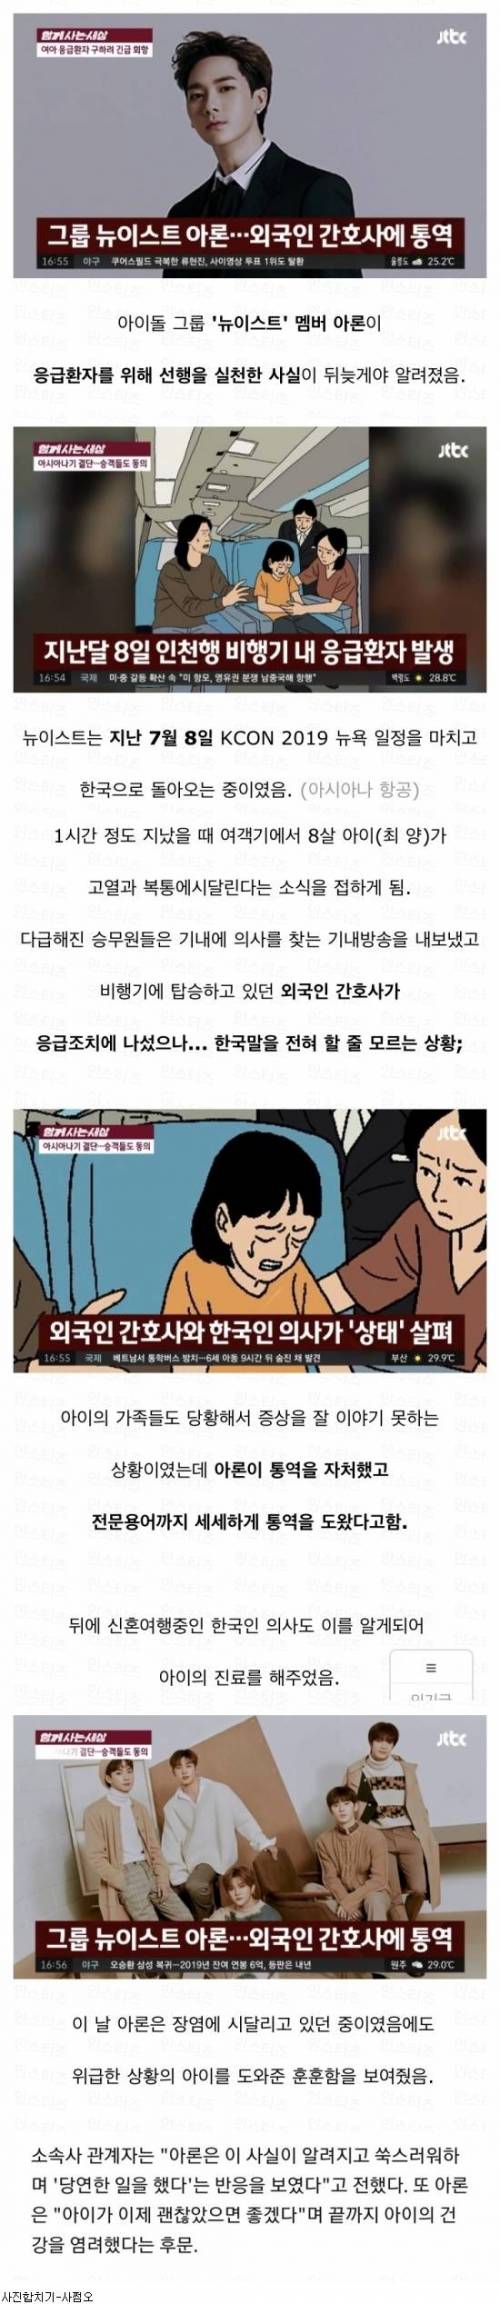 비행기에서 위급한 아이 살린 아이돌.jpg